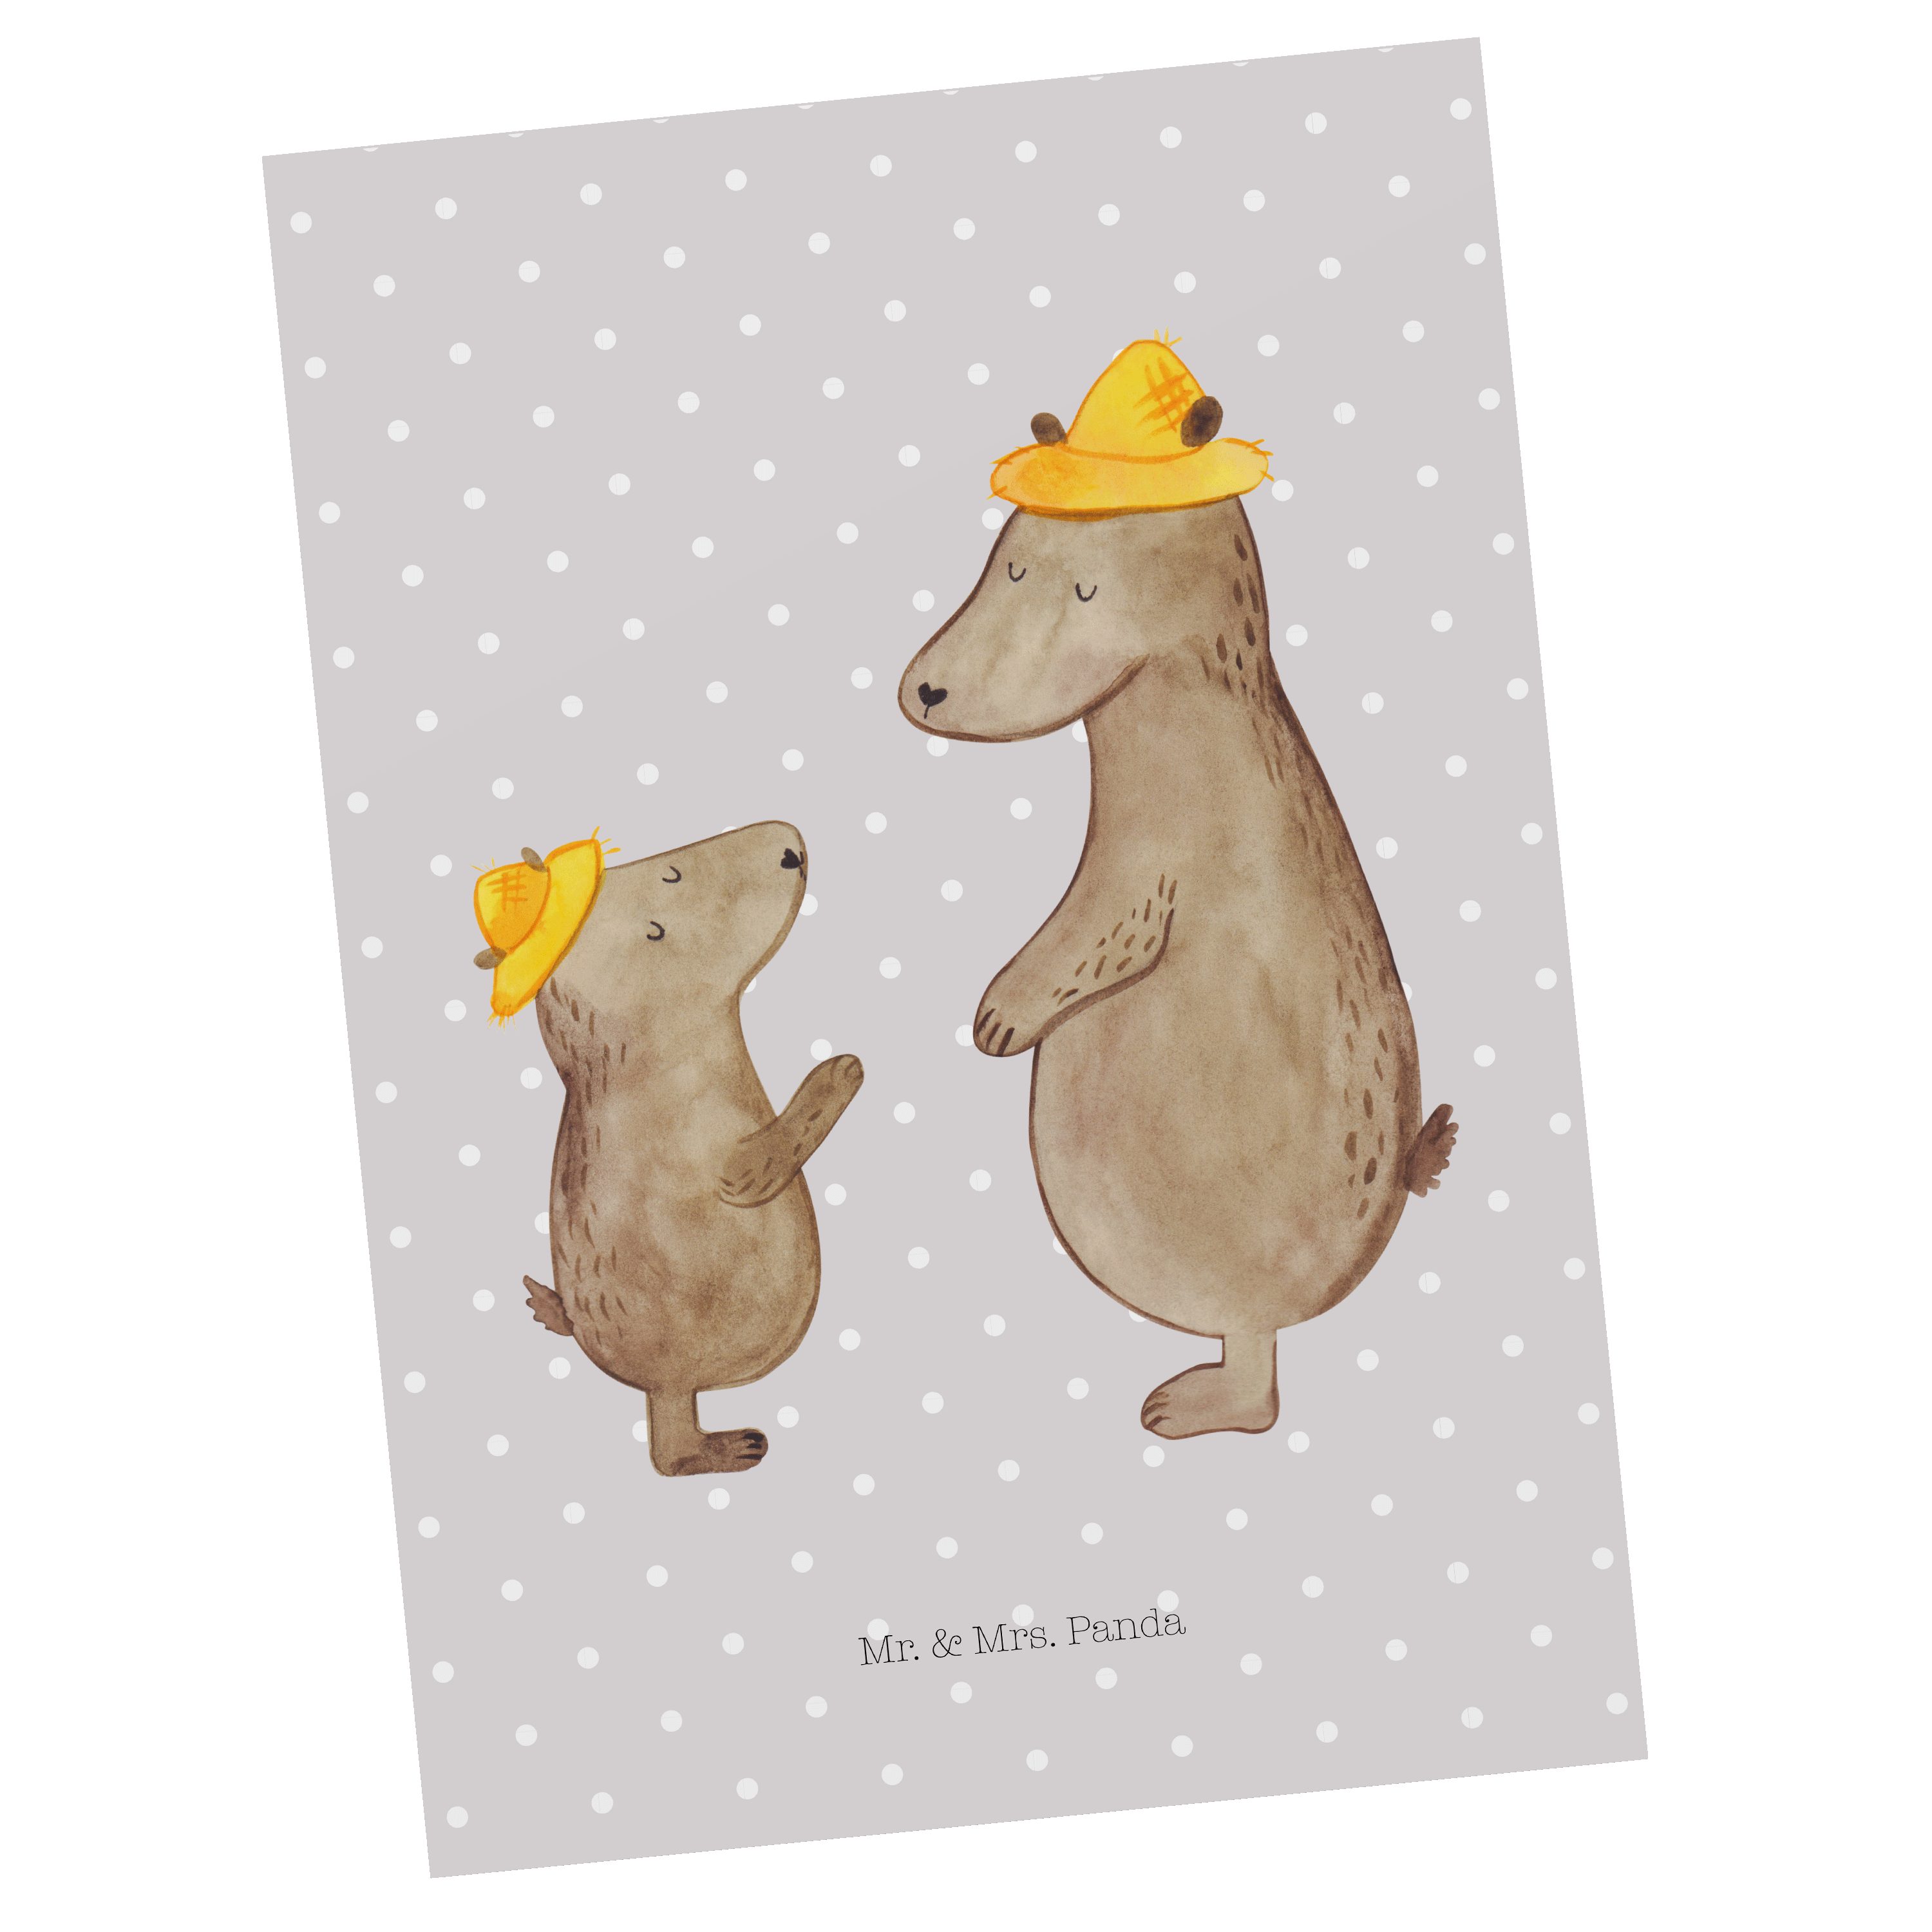 Mr. & Mrs. Panda - Pastell Hut Papi, Geschenk, Dad, Grau Postkarte mit Vatertag, Bären - Karte